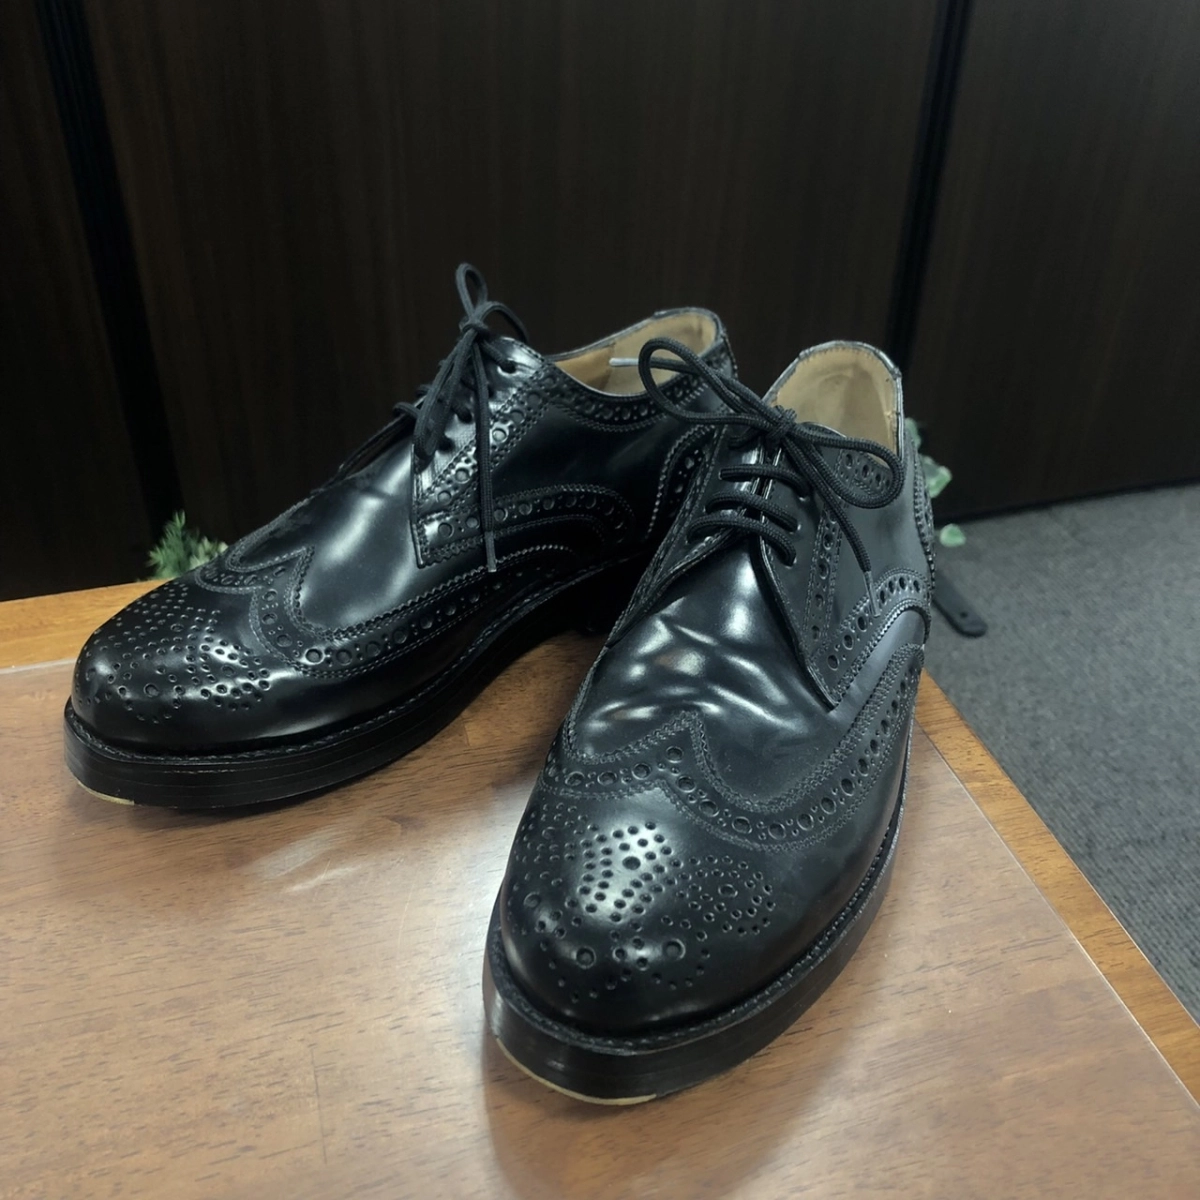 ハインリッヒディンケラッカー ブラック シェルコードバン RIO・リオ フルブローグレザーシューズ・革靴 3087 4318 買取実績です。